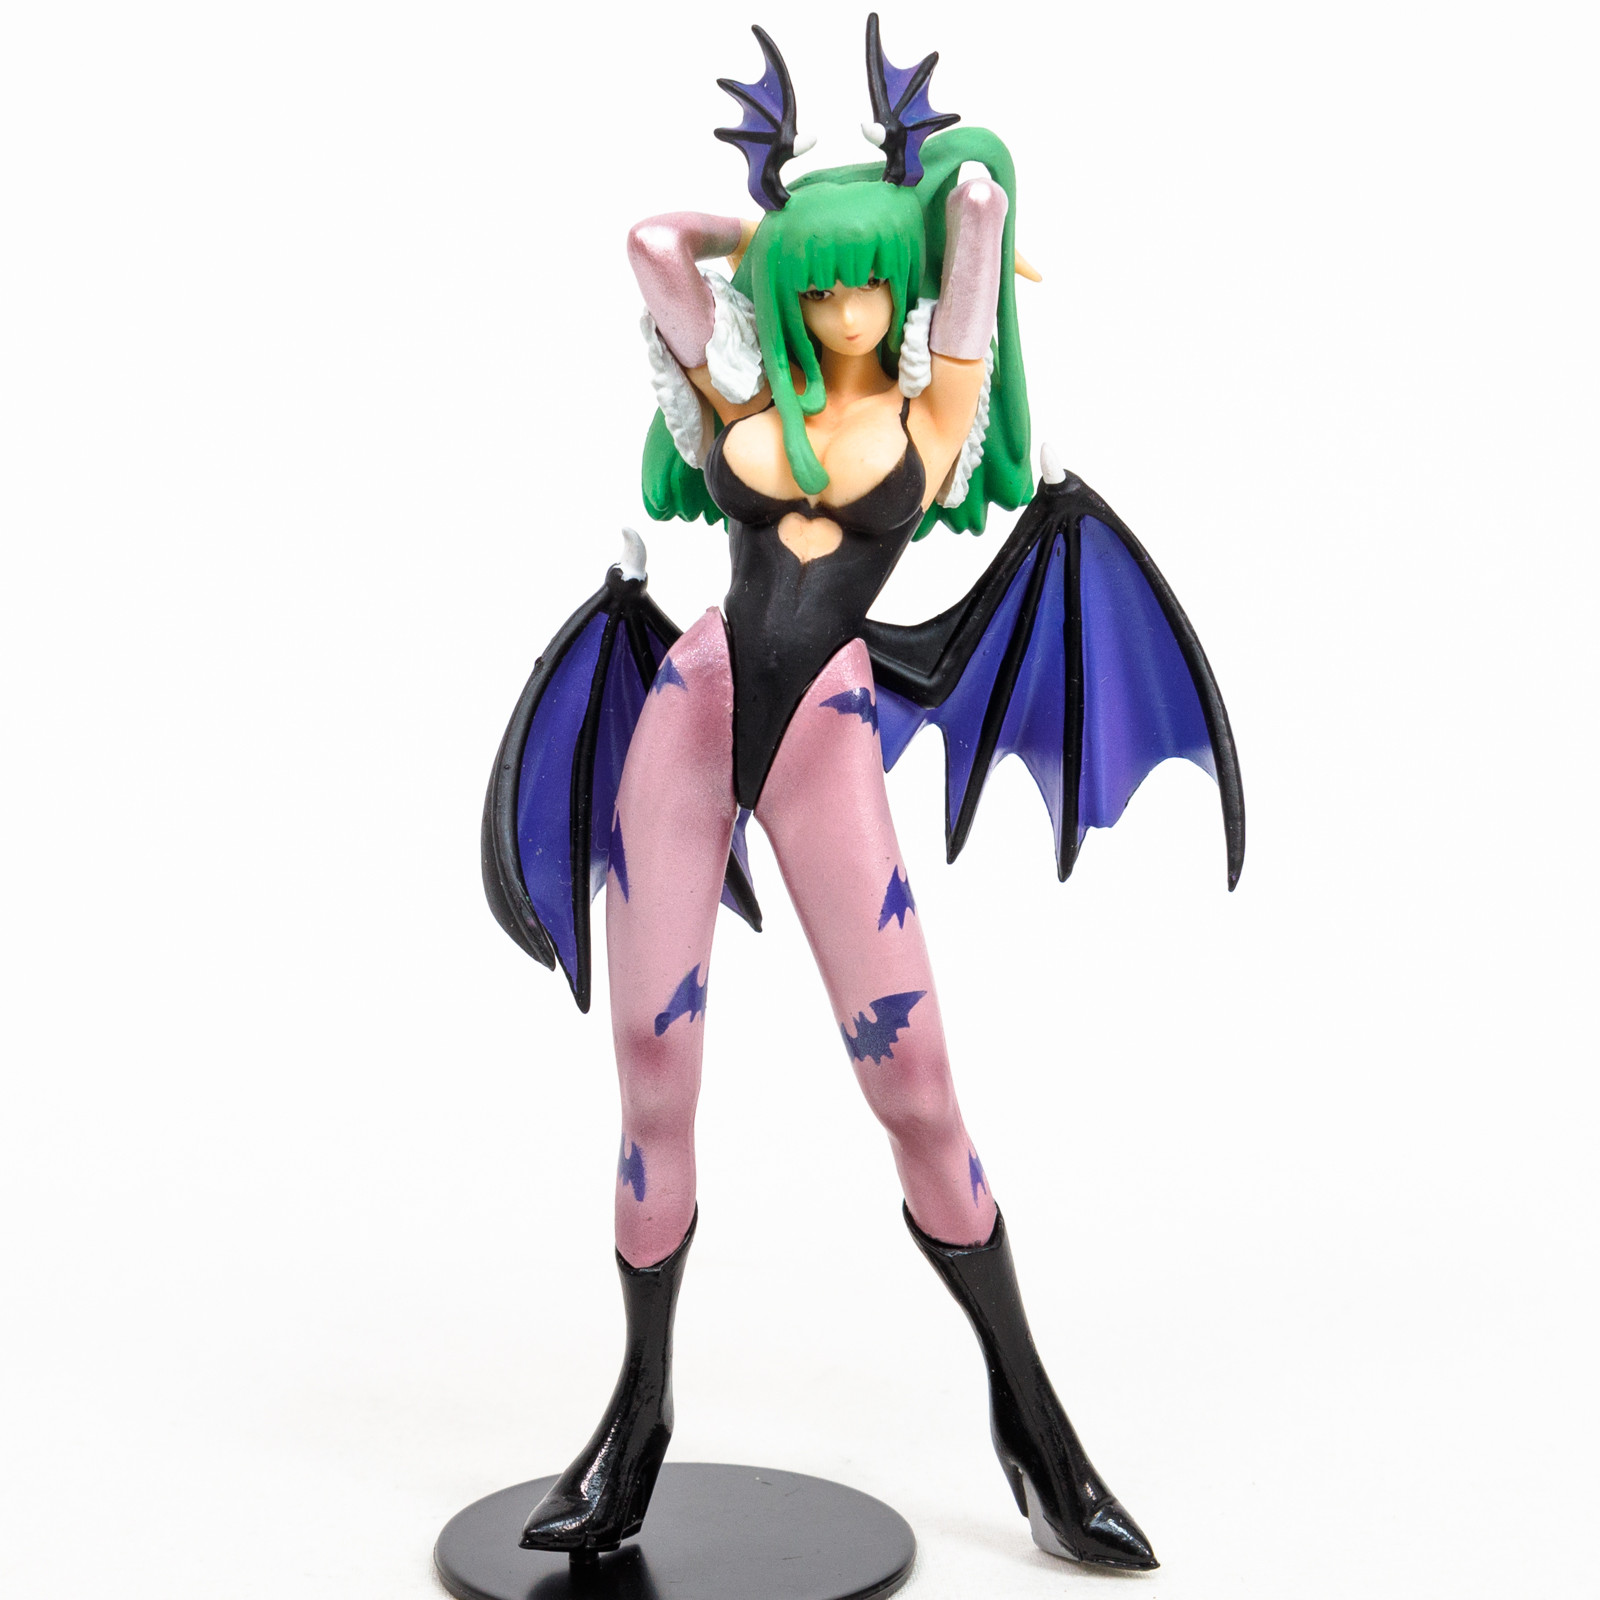 Darkstalkers (Vampire) Morrigan Aensland Mini Figure JAPAN GAME CAPCOM